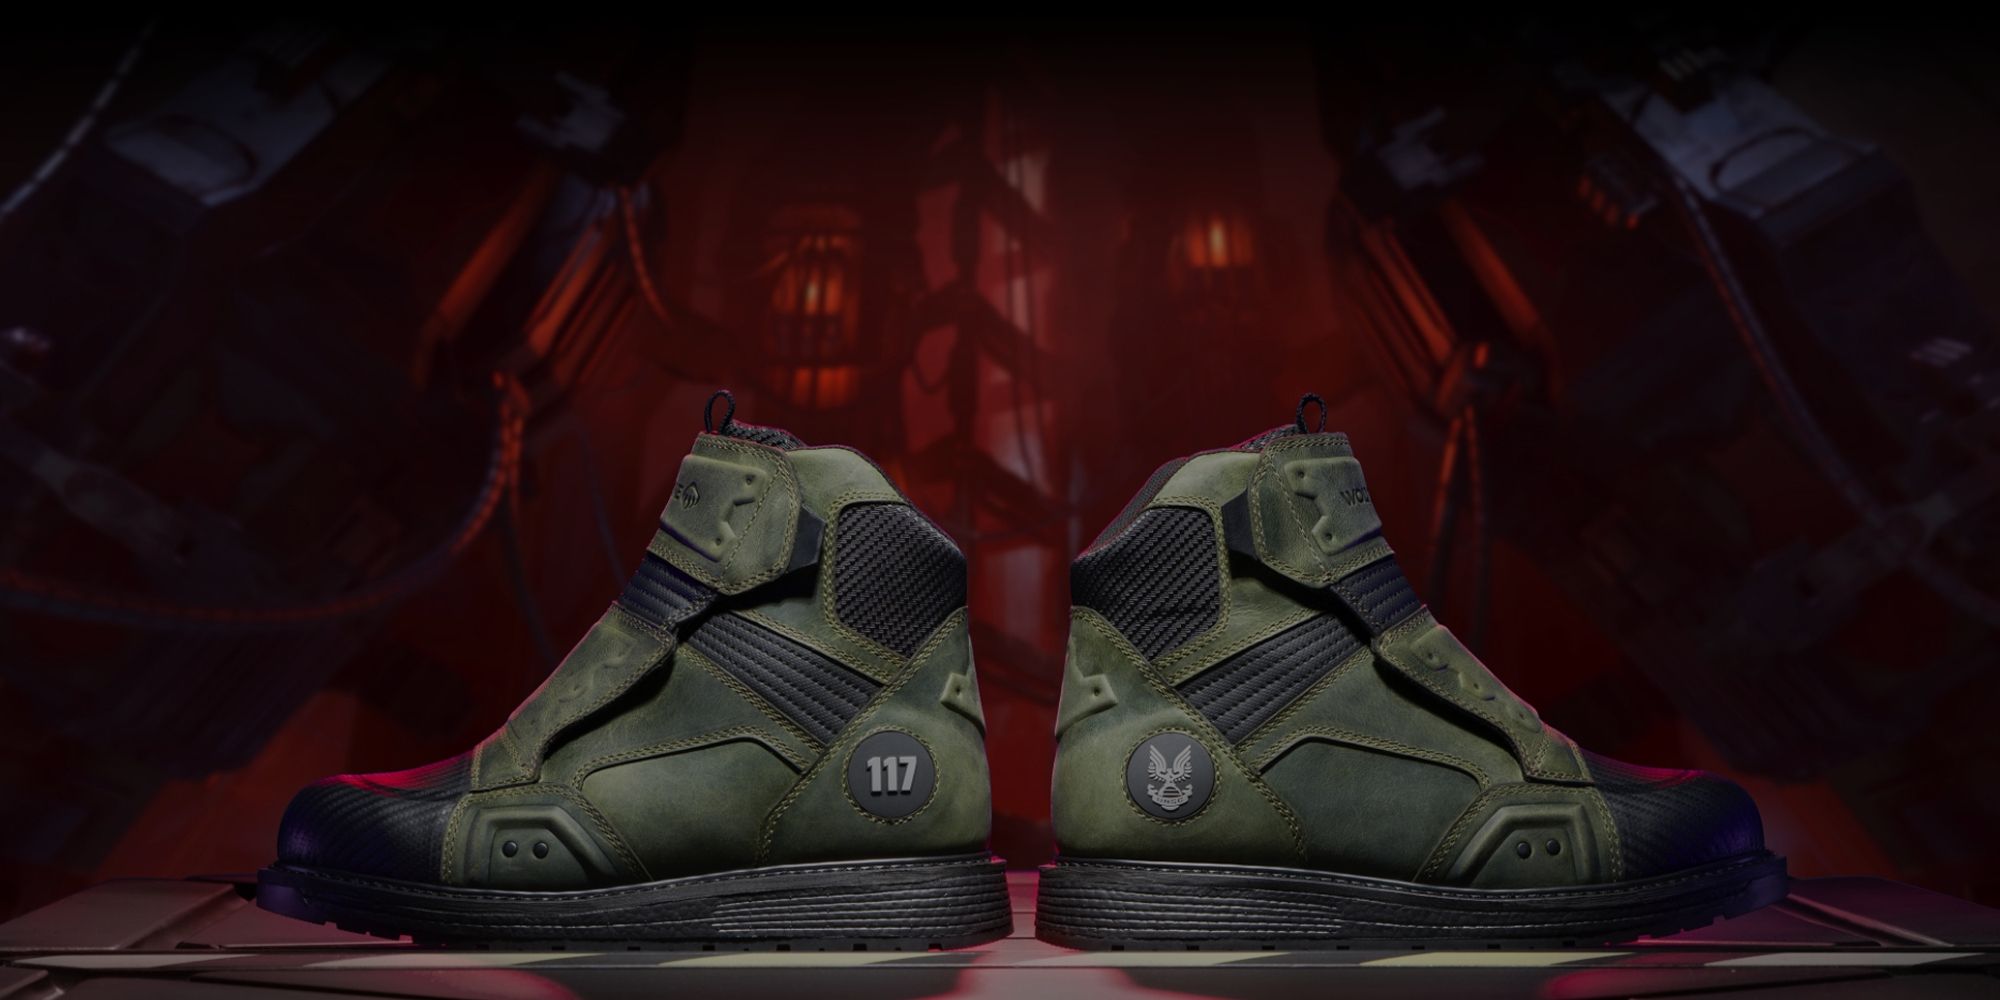 117 pares de botas Halo se venden por más de doscientos dólares